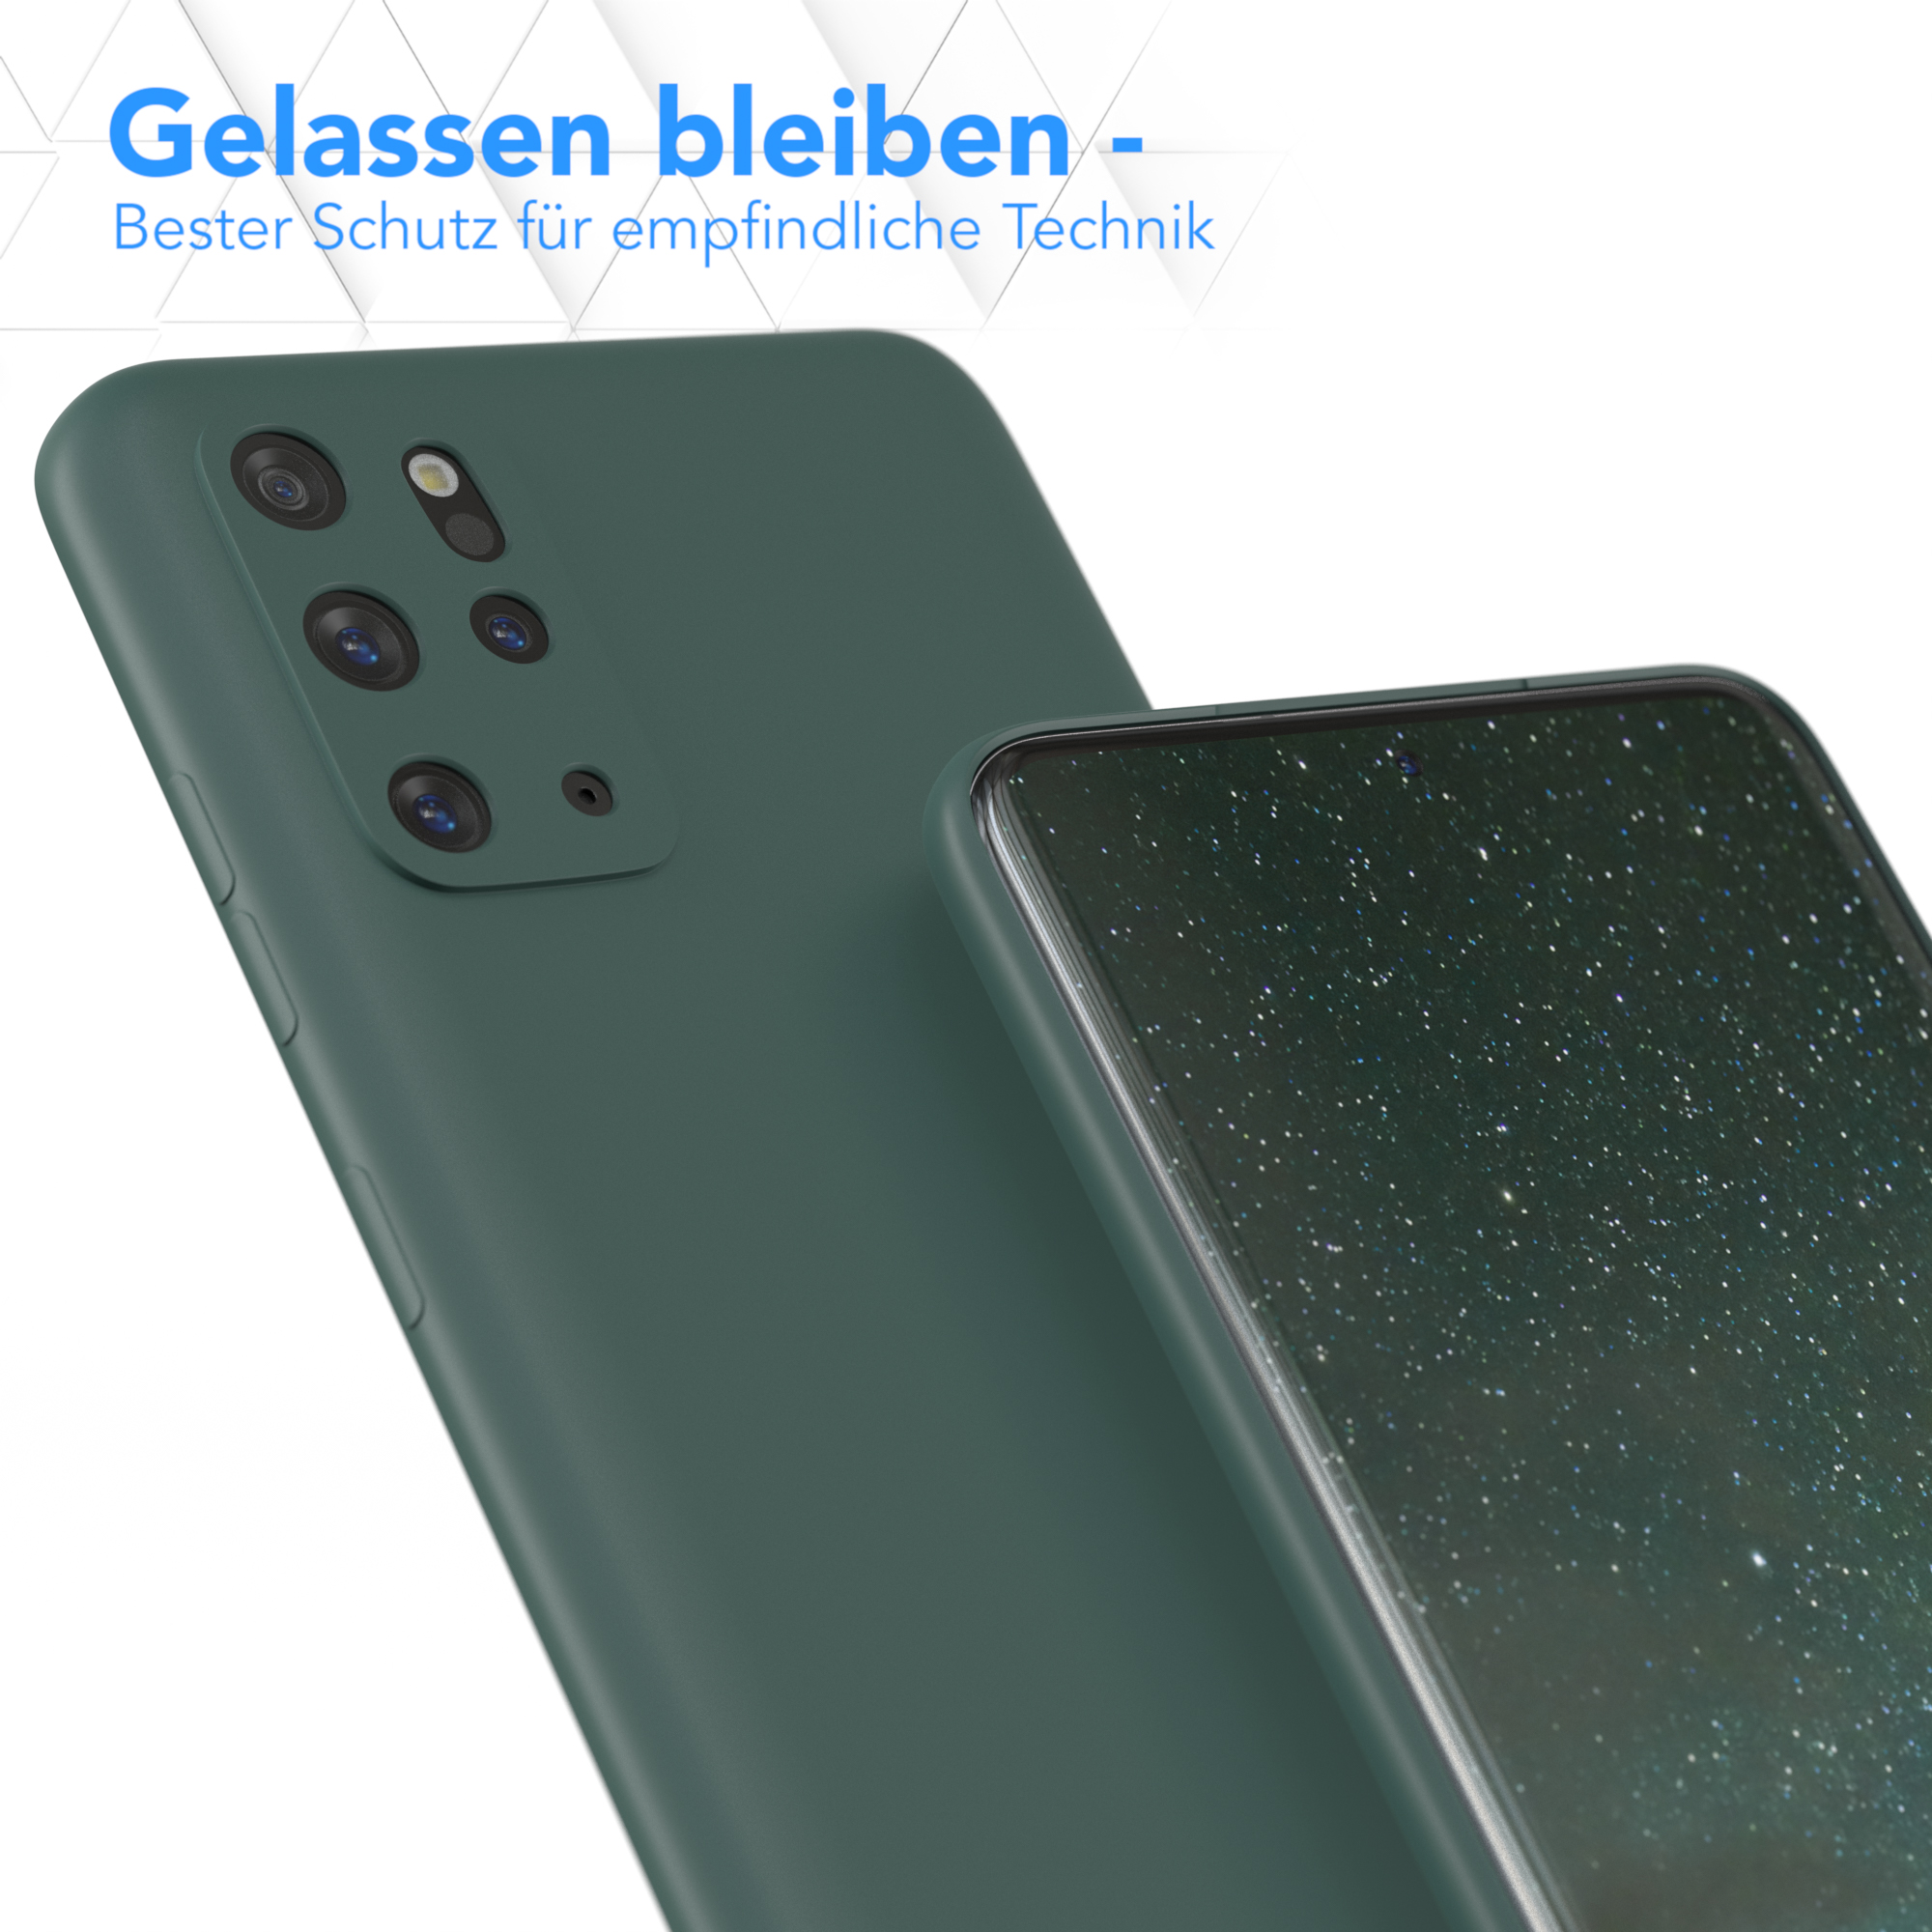 EAZY CASE TPU Silikon Handycase Galaxy S20 / S20 Plus Plus 5G, Backcover, Matt, Nachtgrün / Grün Samsung